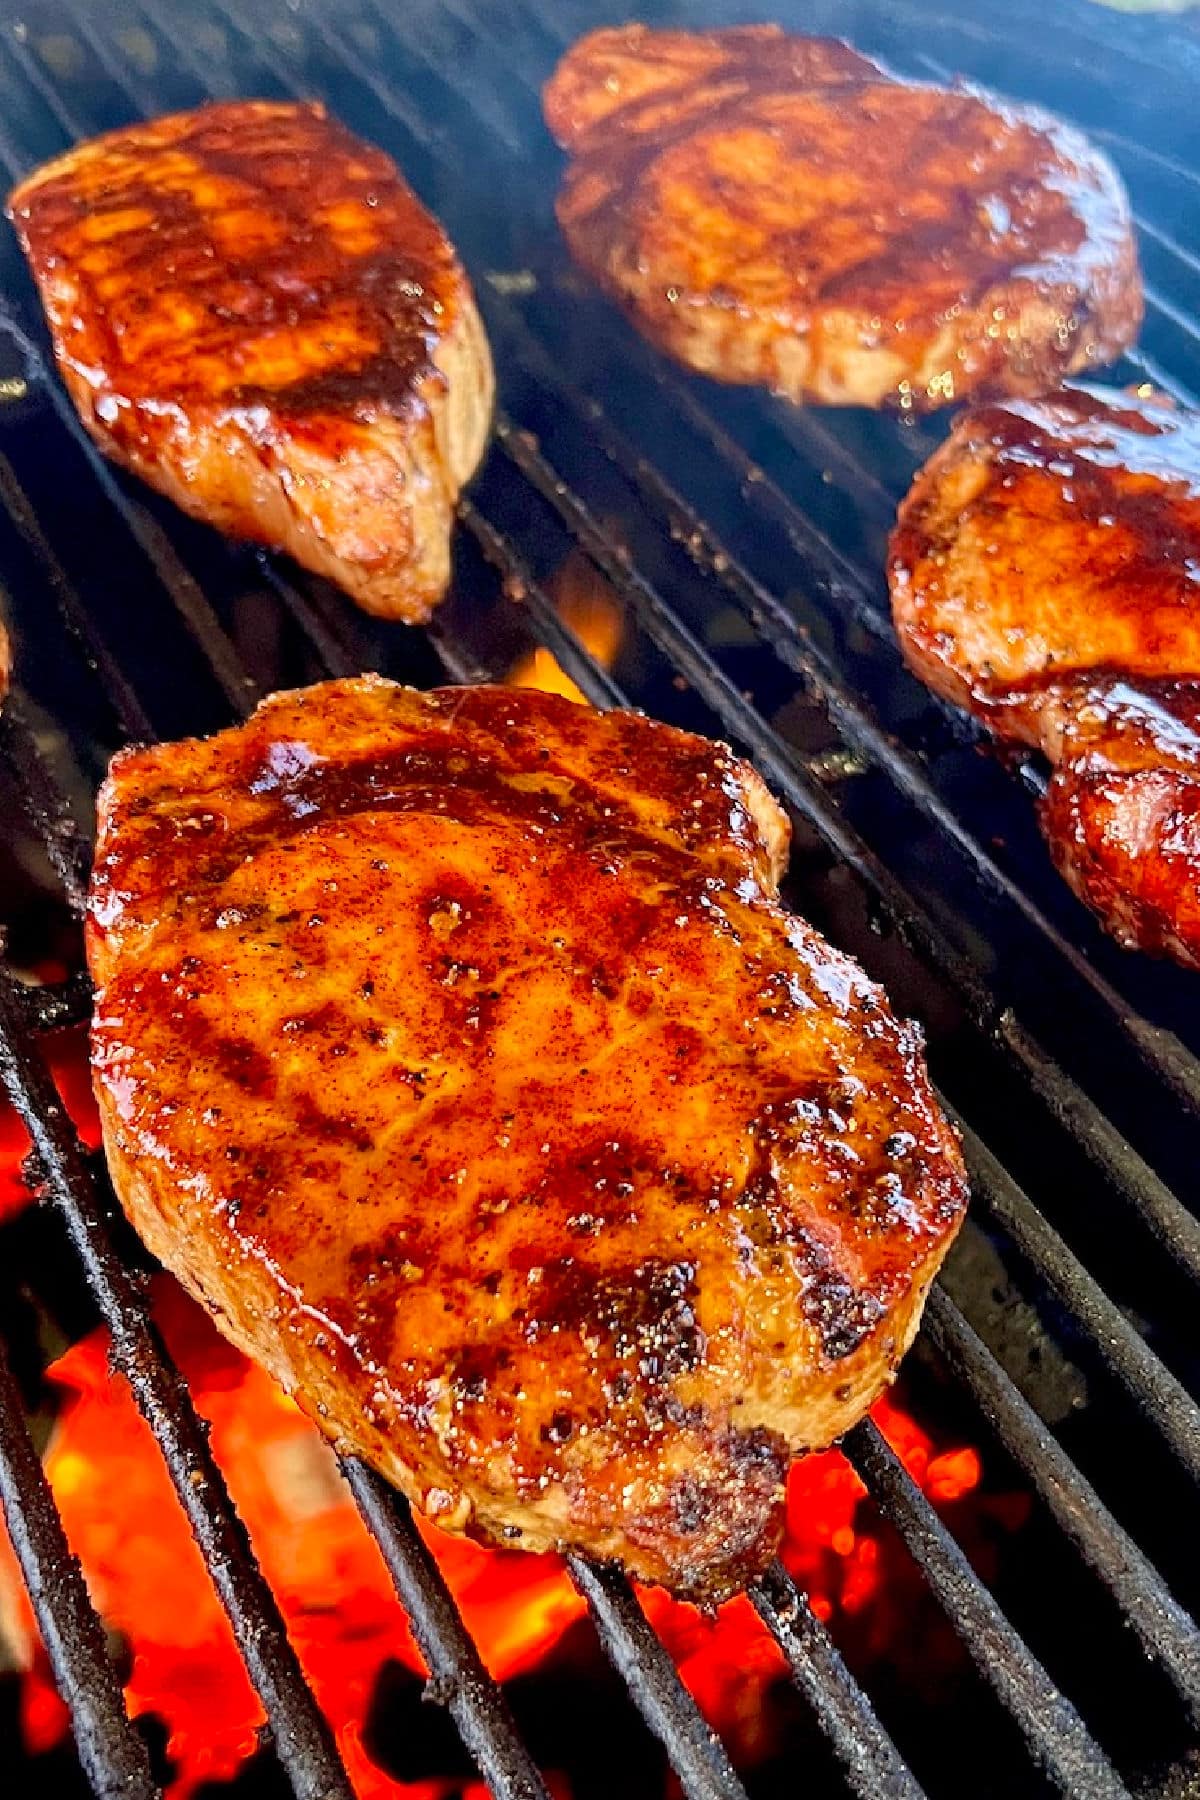 Pork chops on a grill.